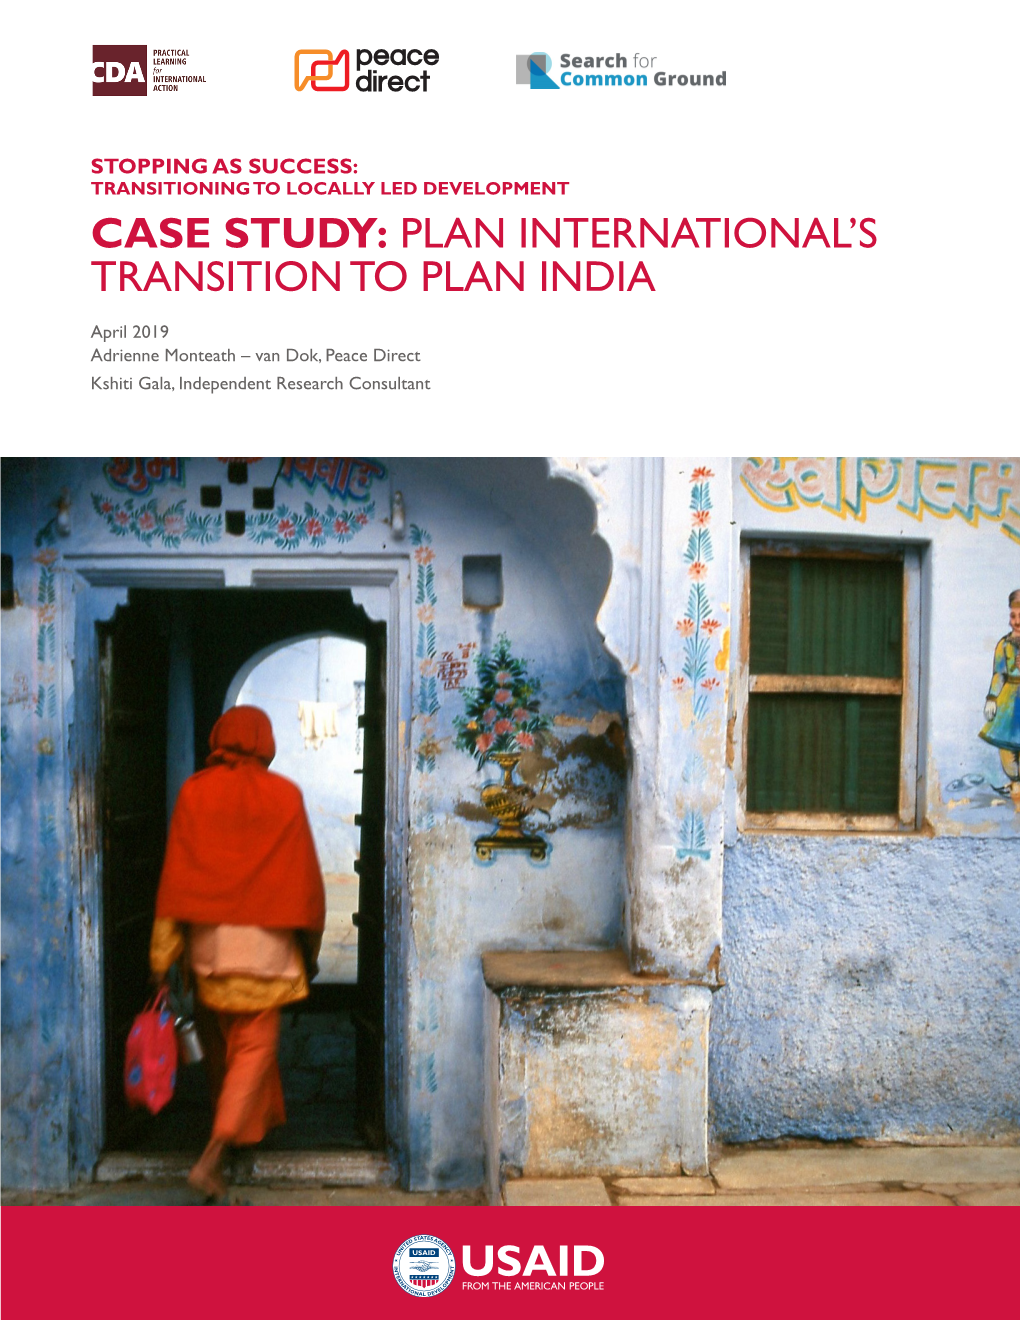 Plan International's Transition to Plan India